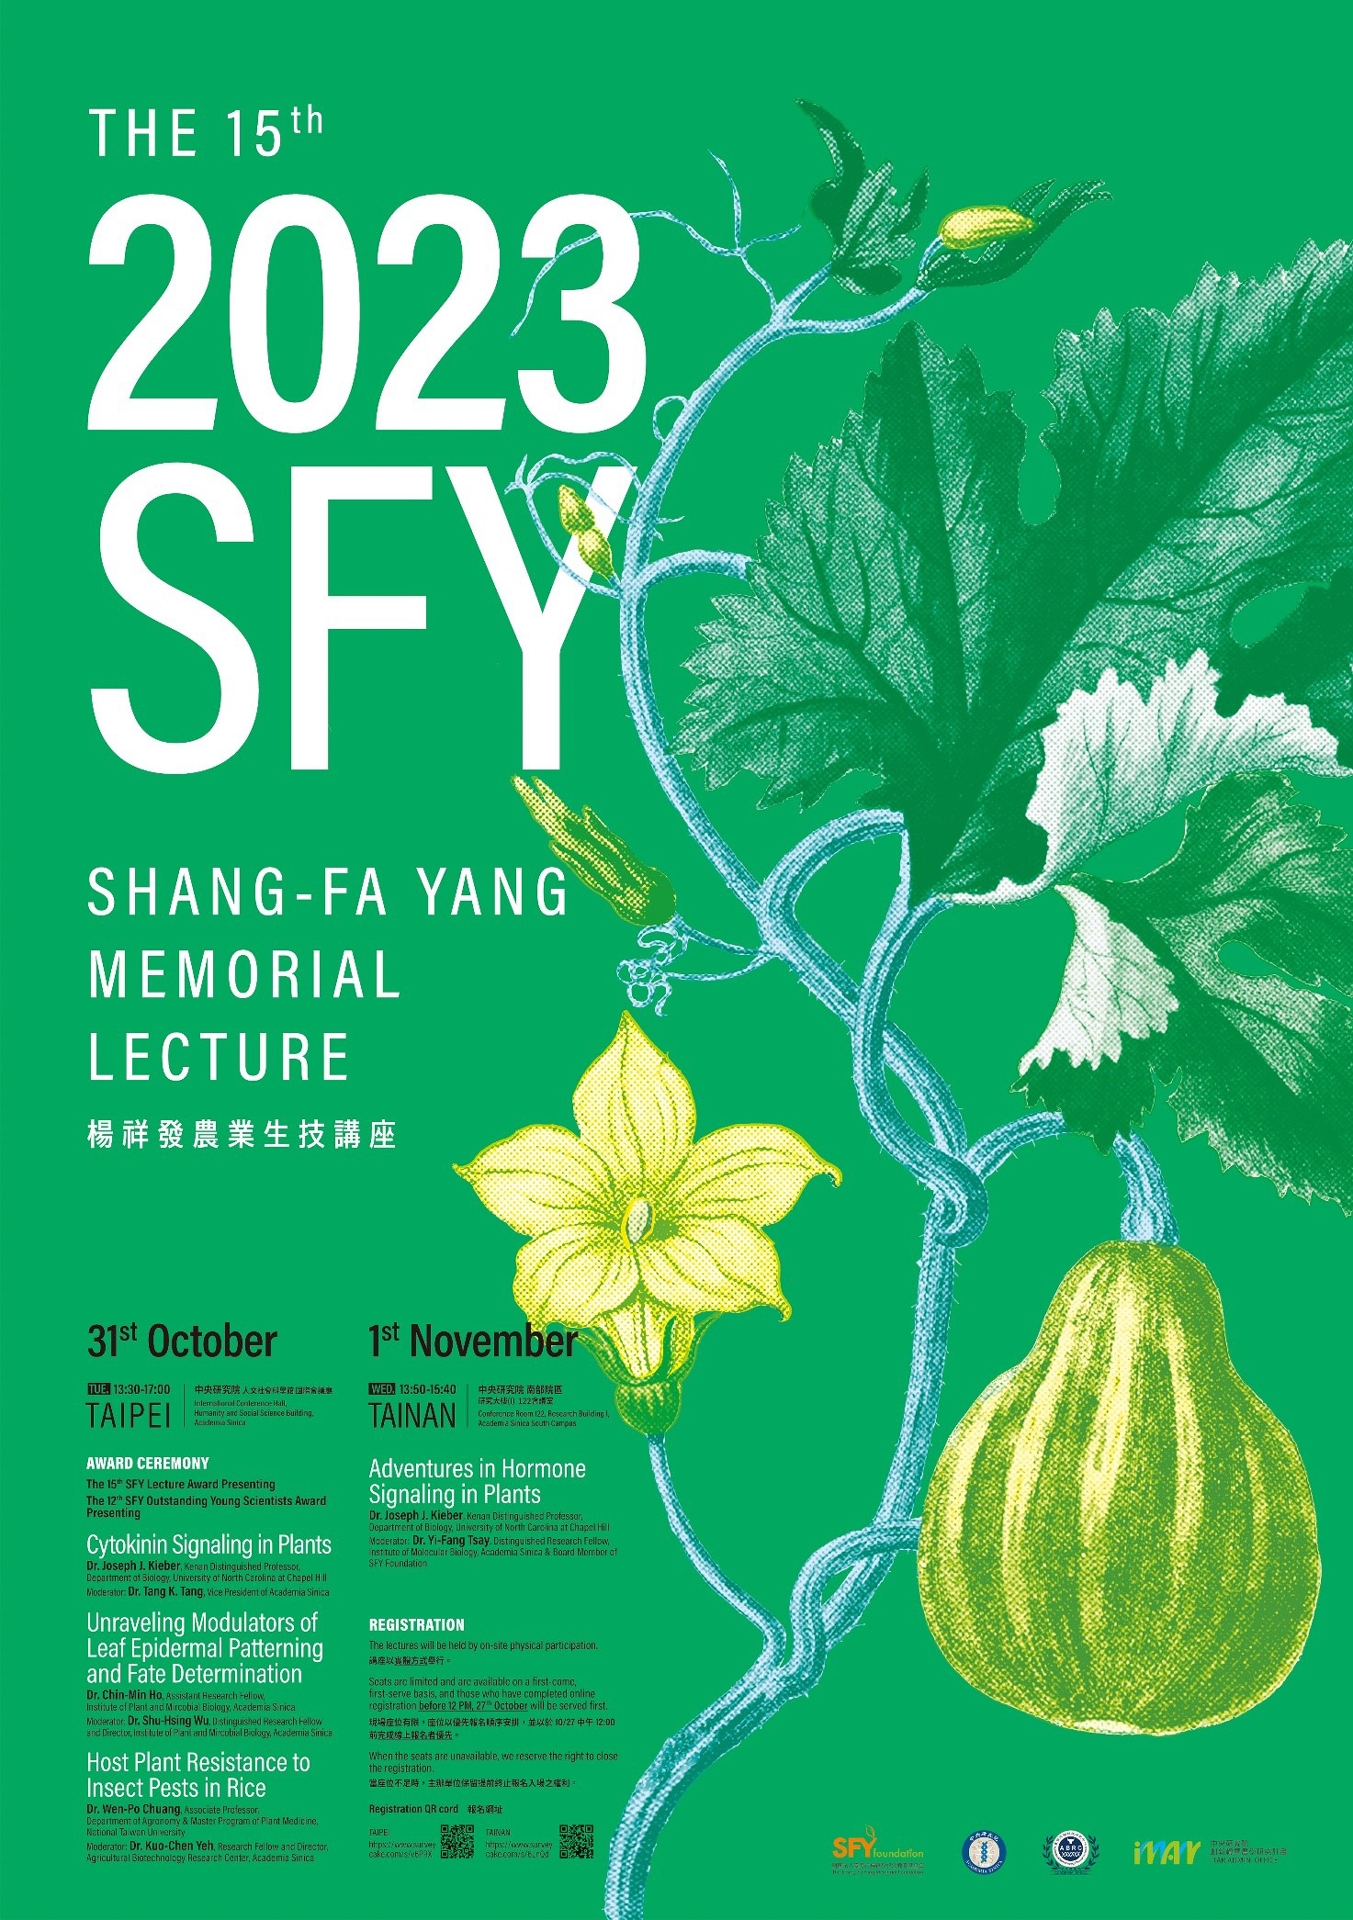 The 15th Shang-Fa Yang Memorial Lecture